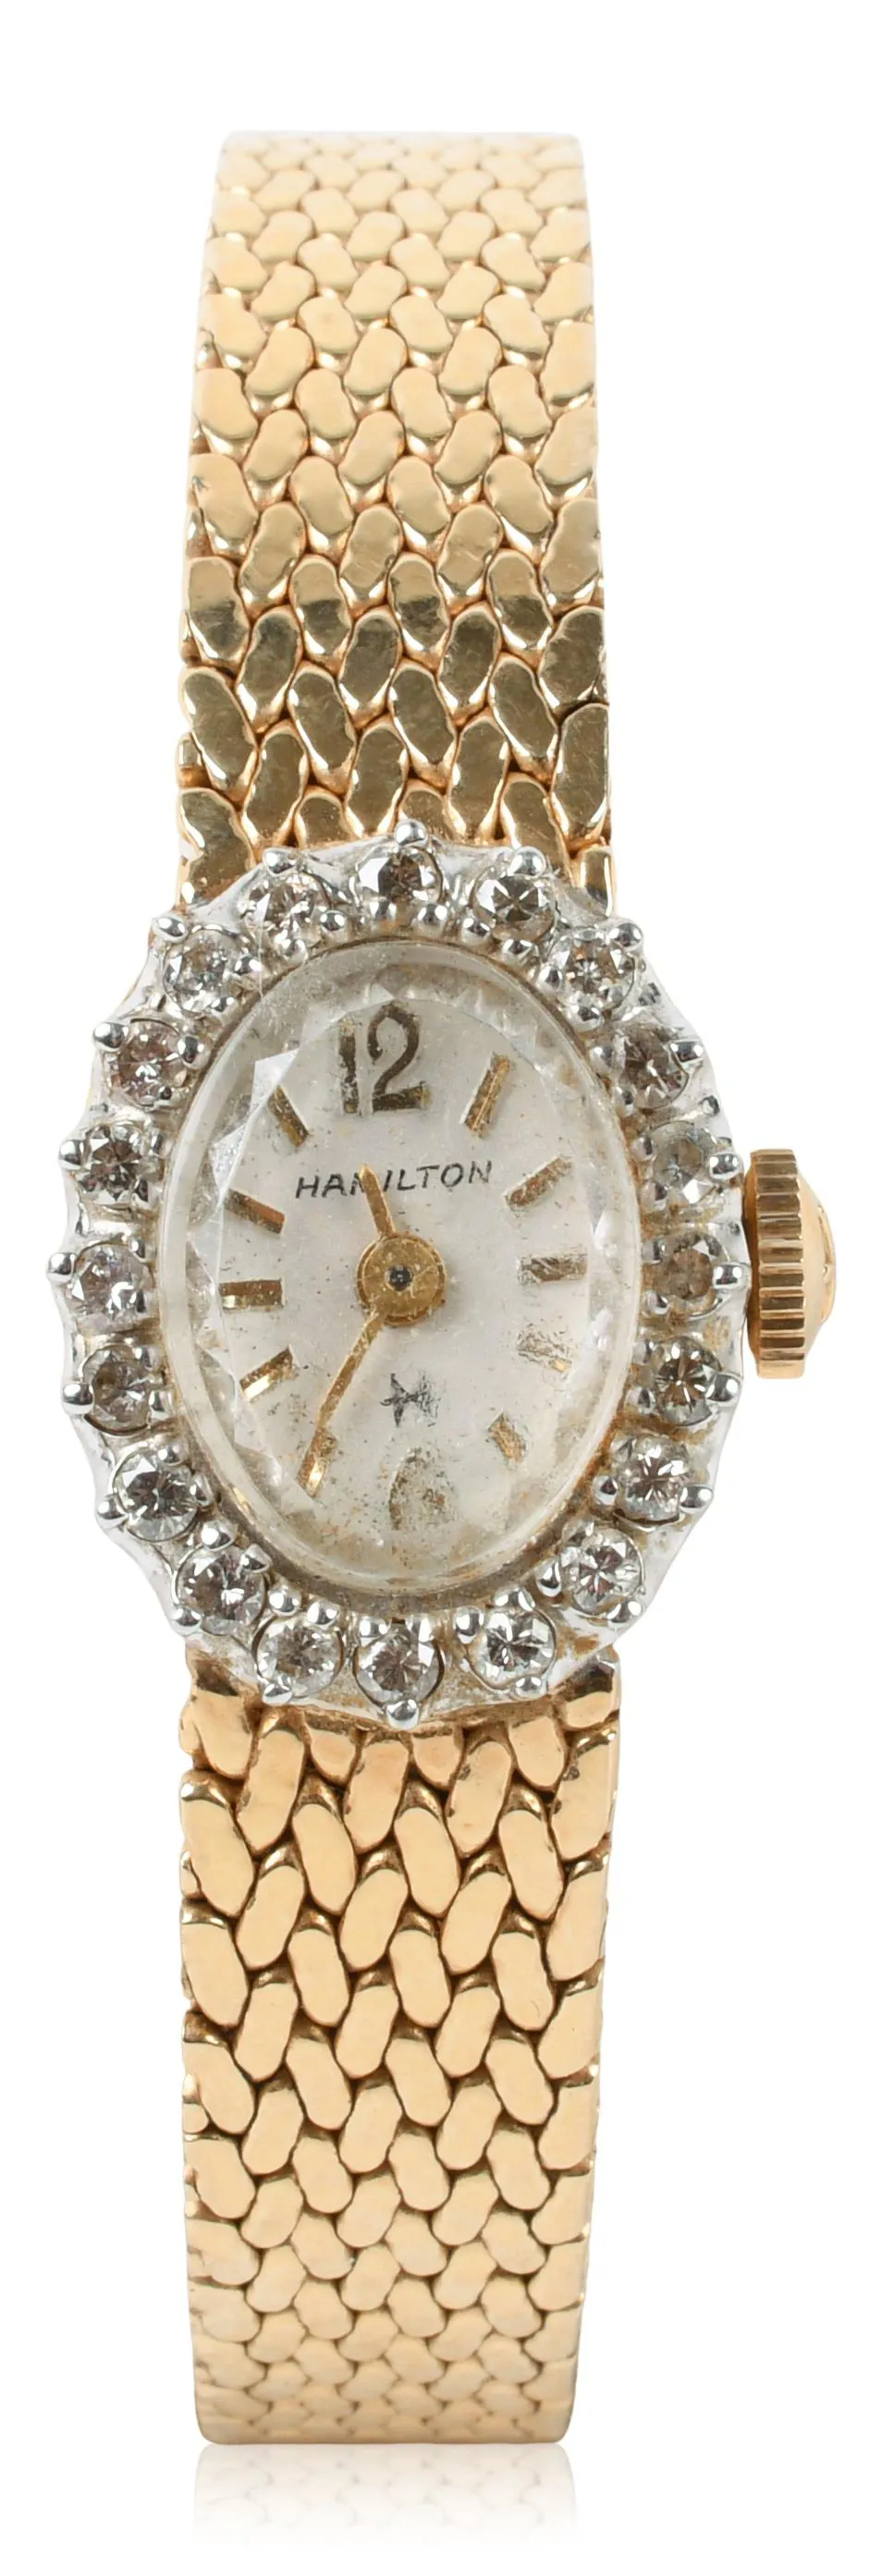 Hamilton 10.5mm Yellow gold and diamond-set White 2